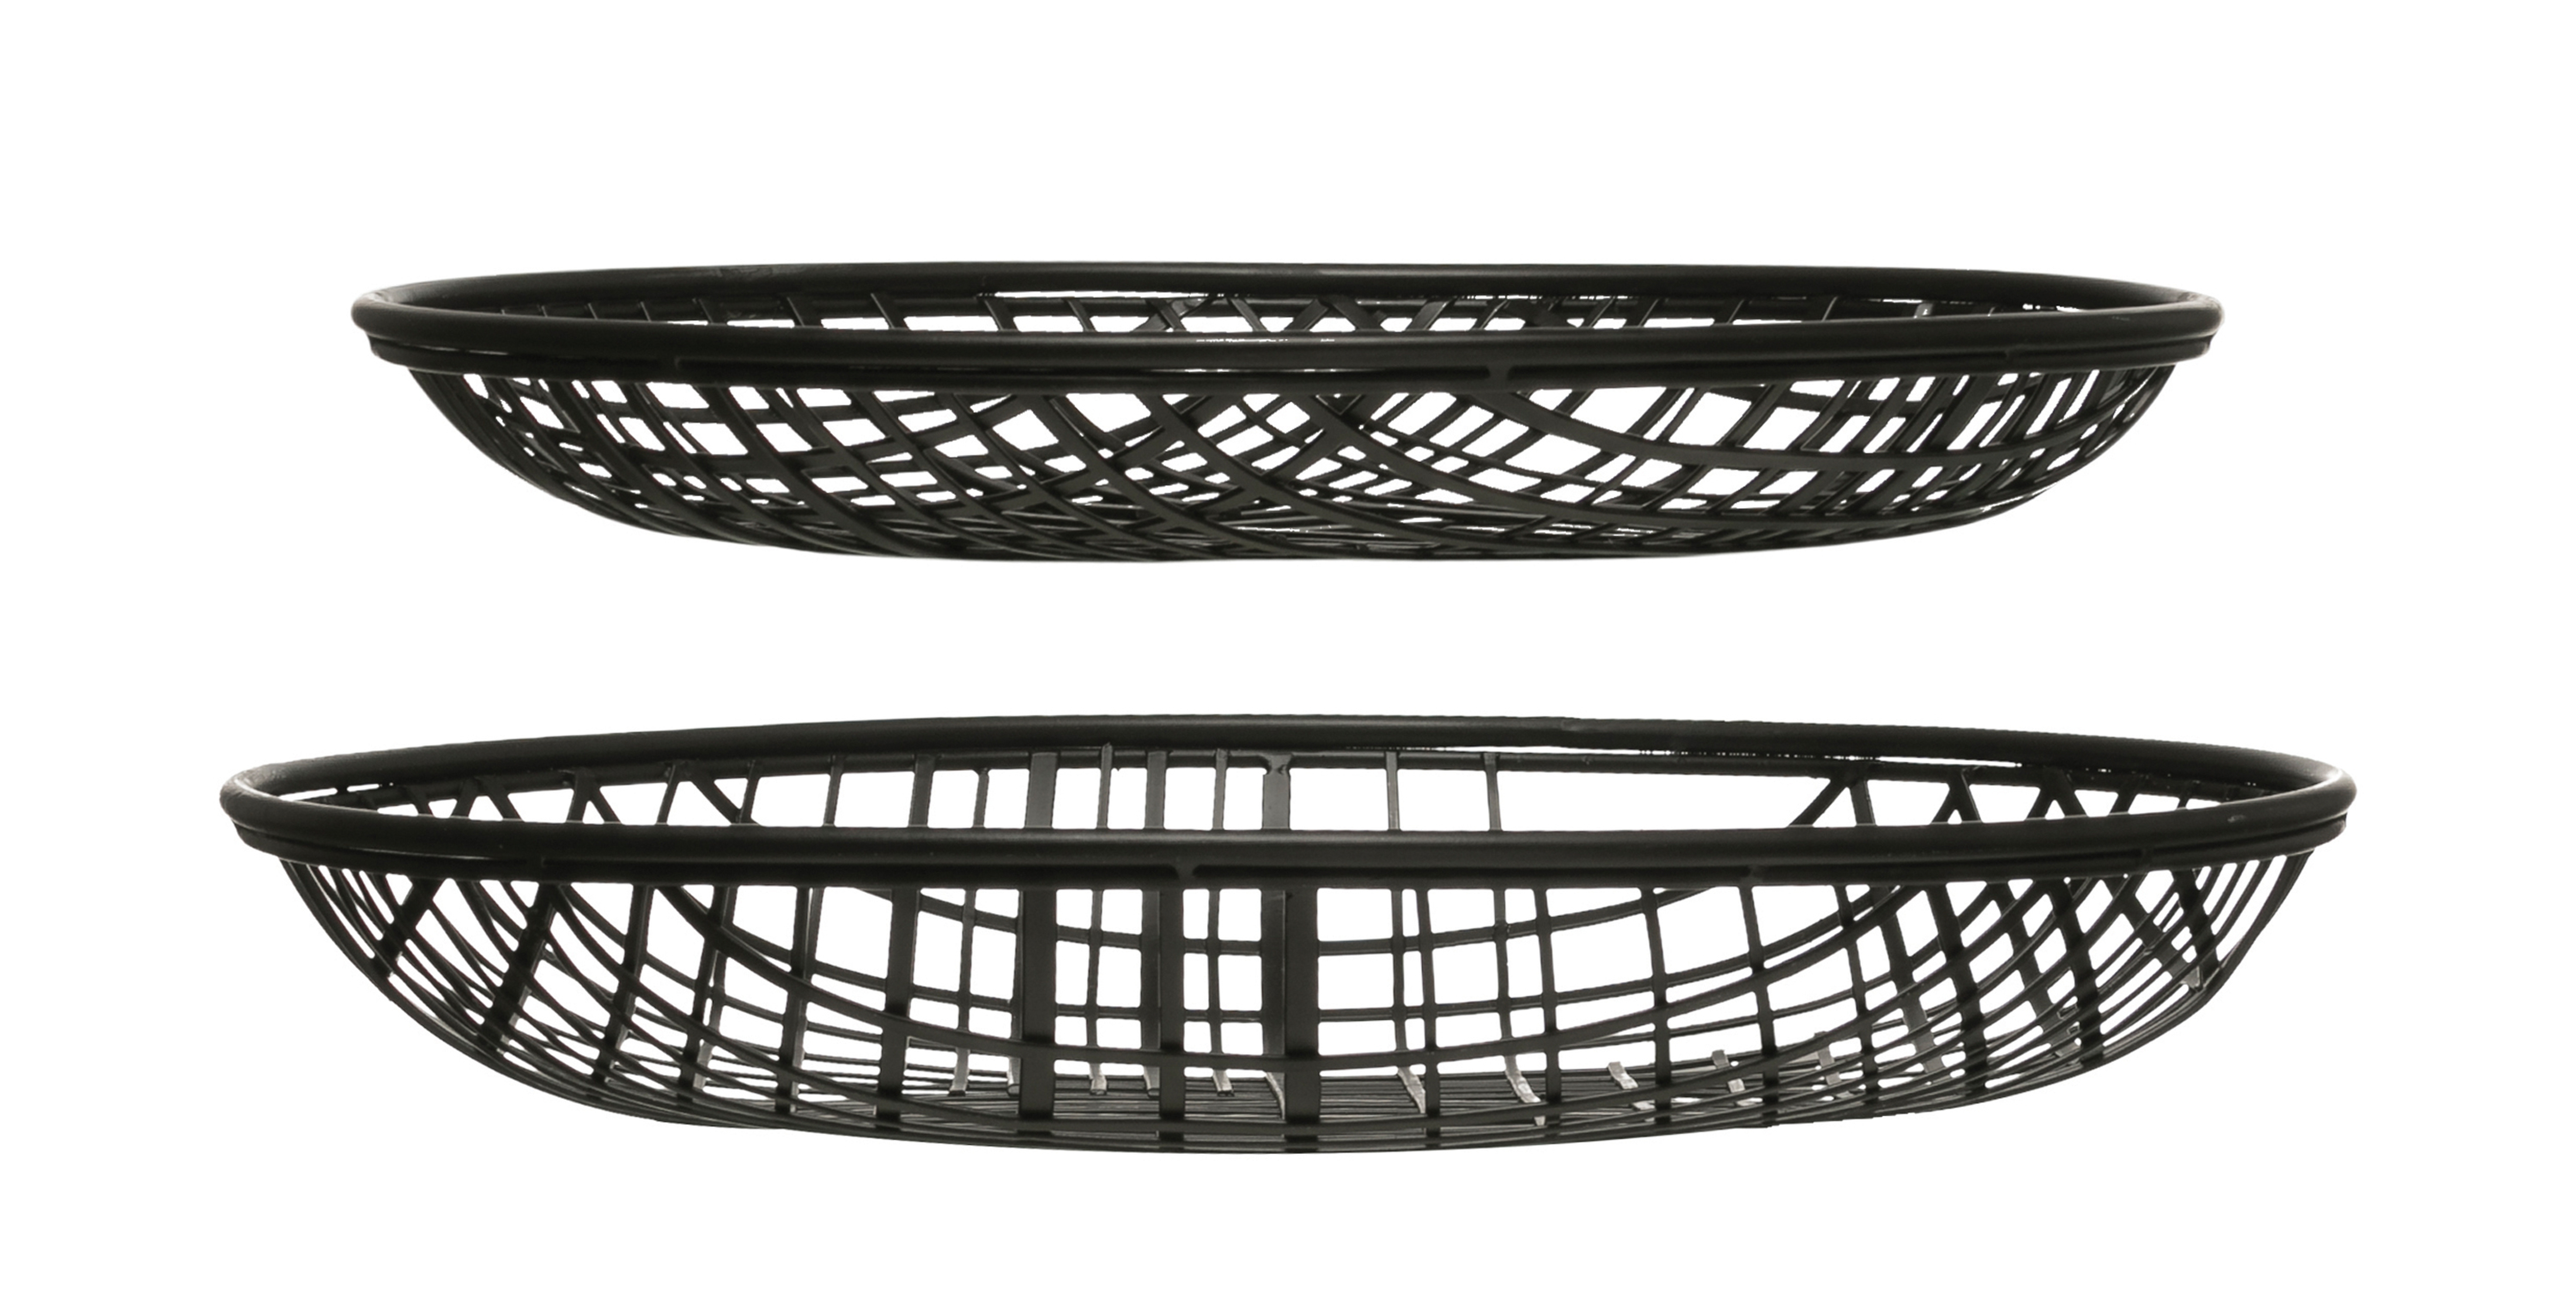 14" & 16" Round Decorative Metal Wire Baskets (Set of 2 Sizes) - Moss & Wilder